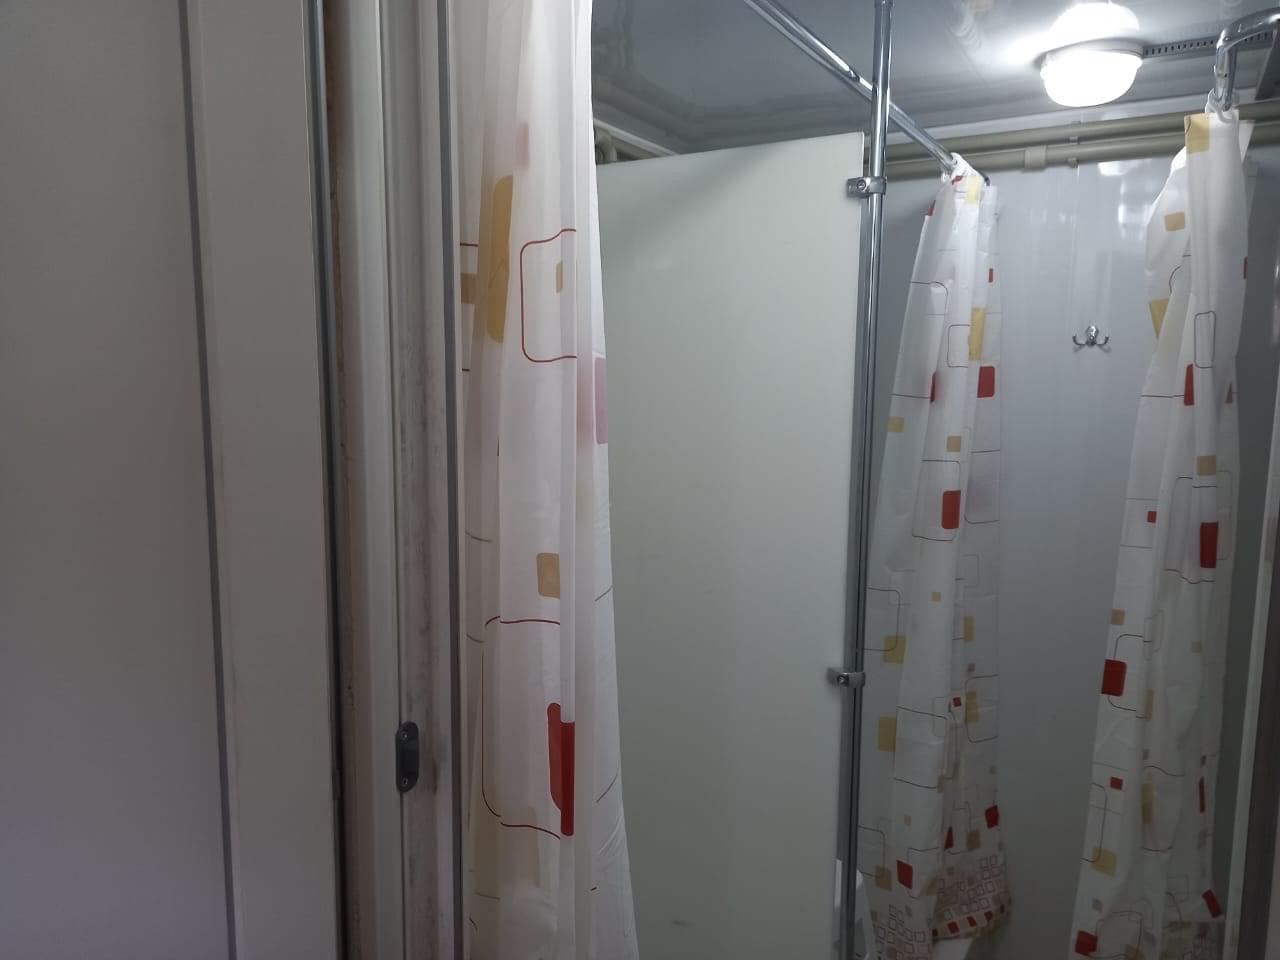 В Святогорске появился уличный санитарный комплекс — в нем есть душ, туалет и стиральные машины (ФОТО) 2